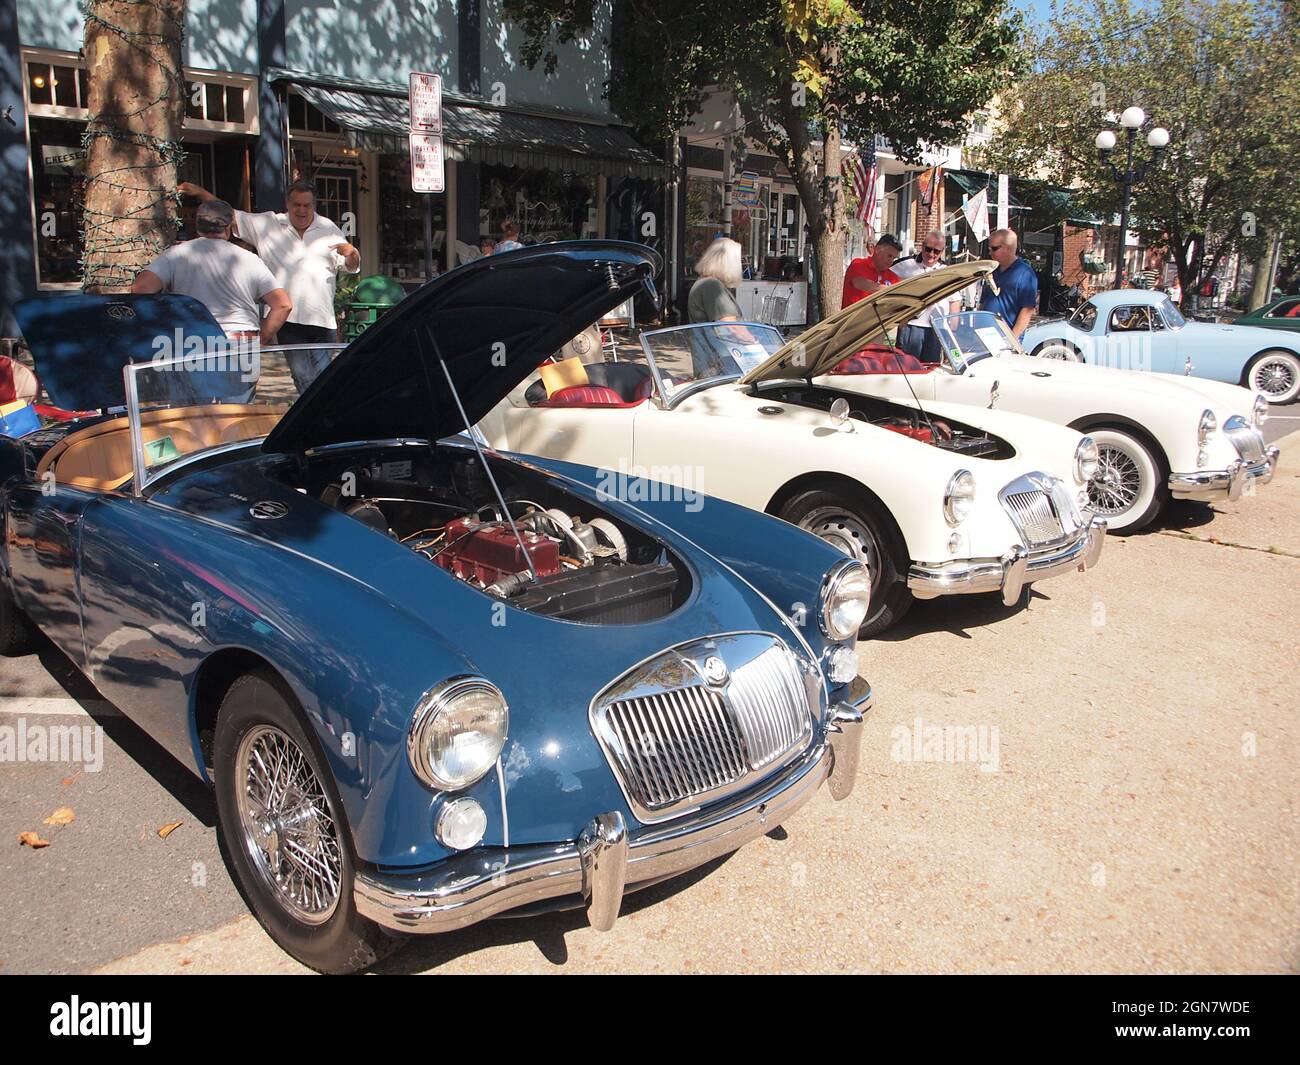 Spectacle annuel de voitures « Bits on the Beach » à Ocean Grove, New Jersey, qui attire de nombreuses voitures britanniques classiques et restaurées. Banque D'Images